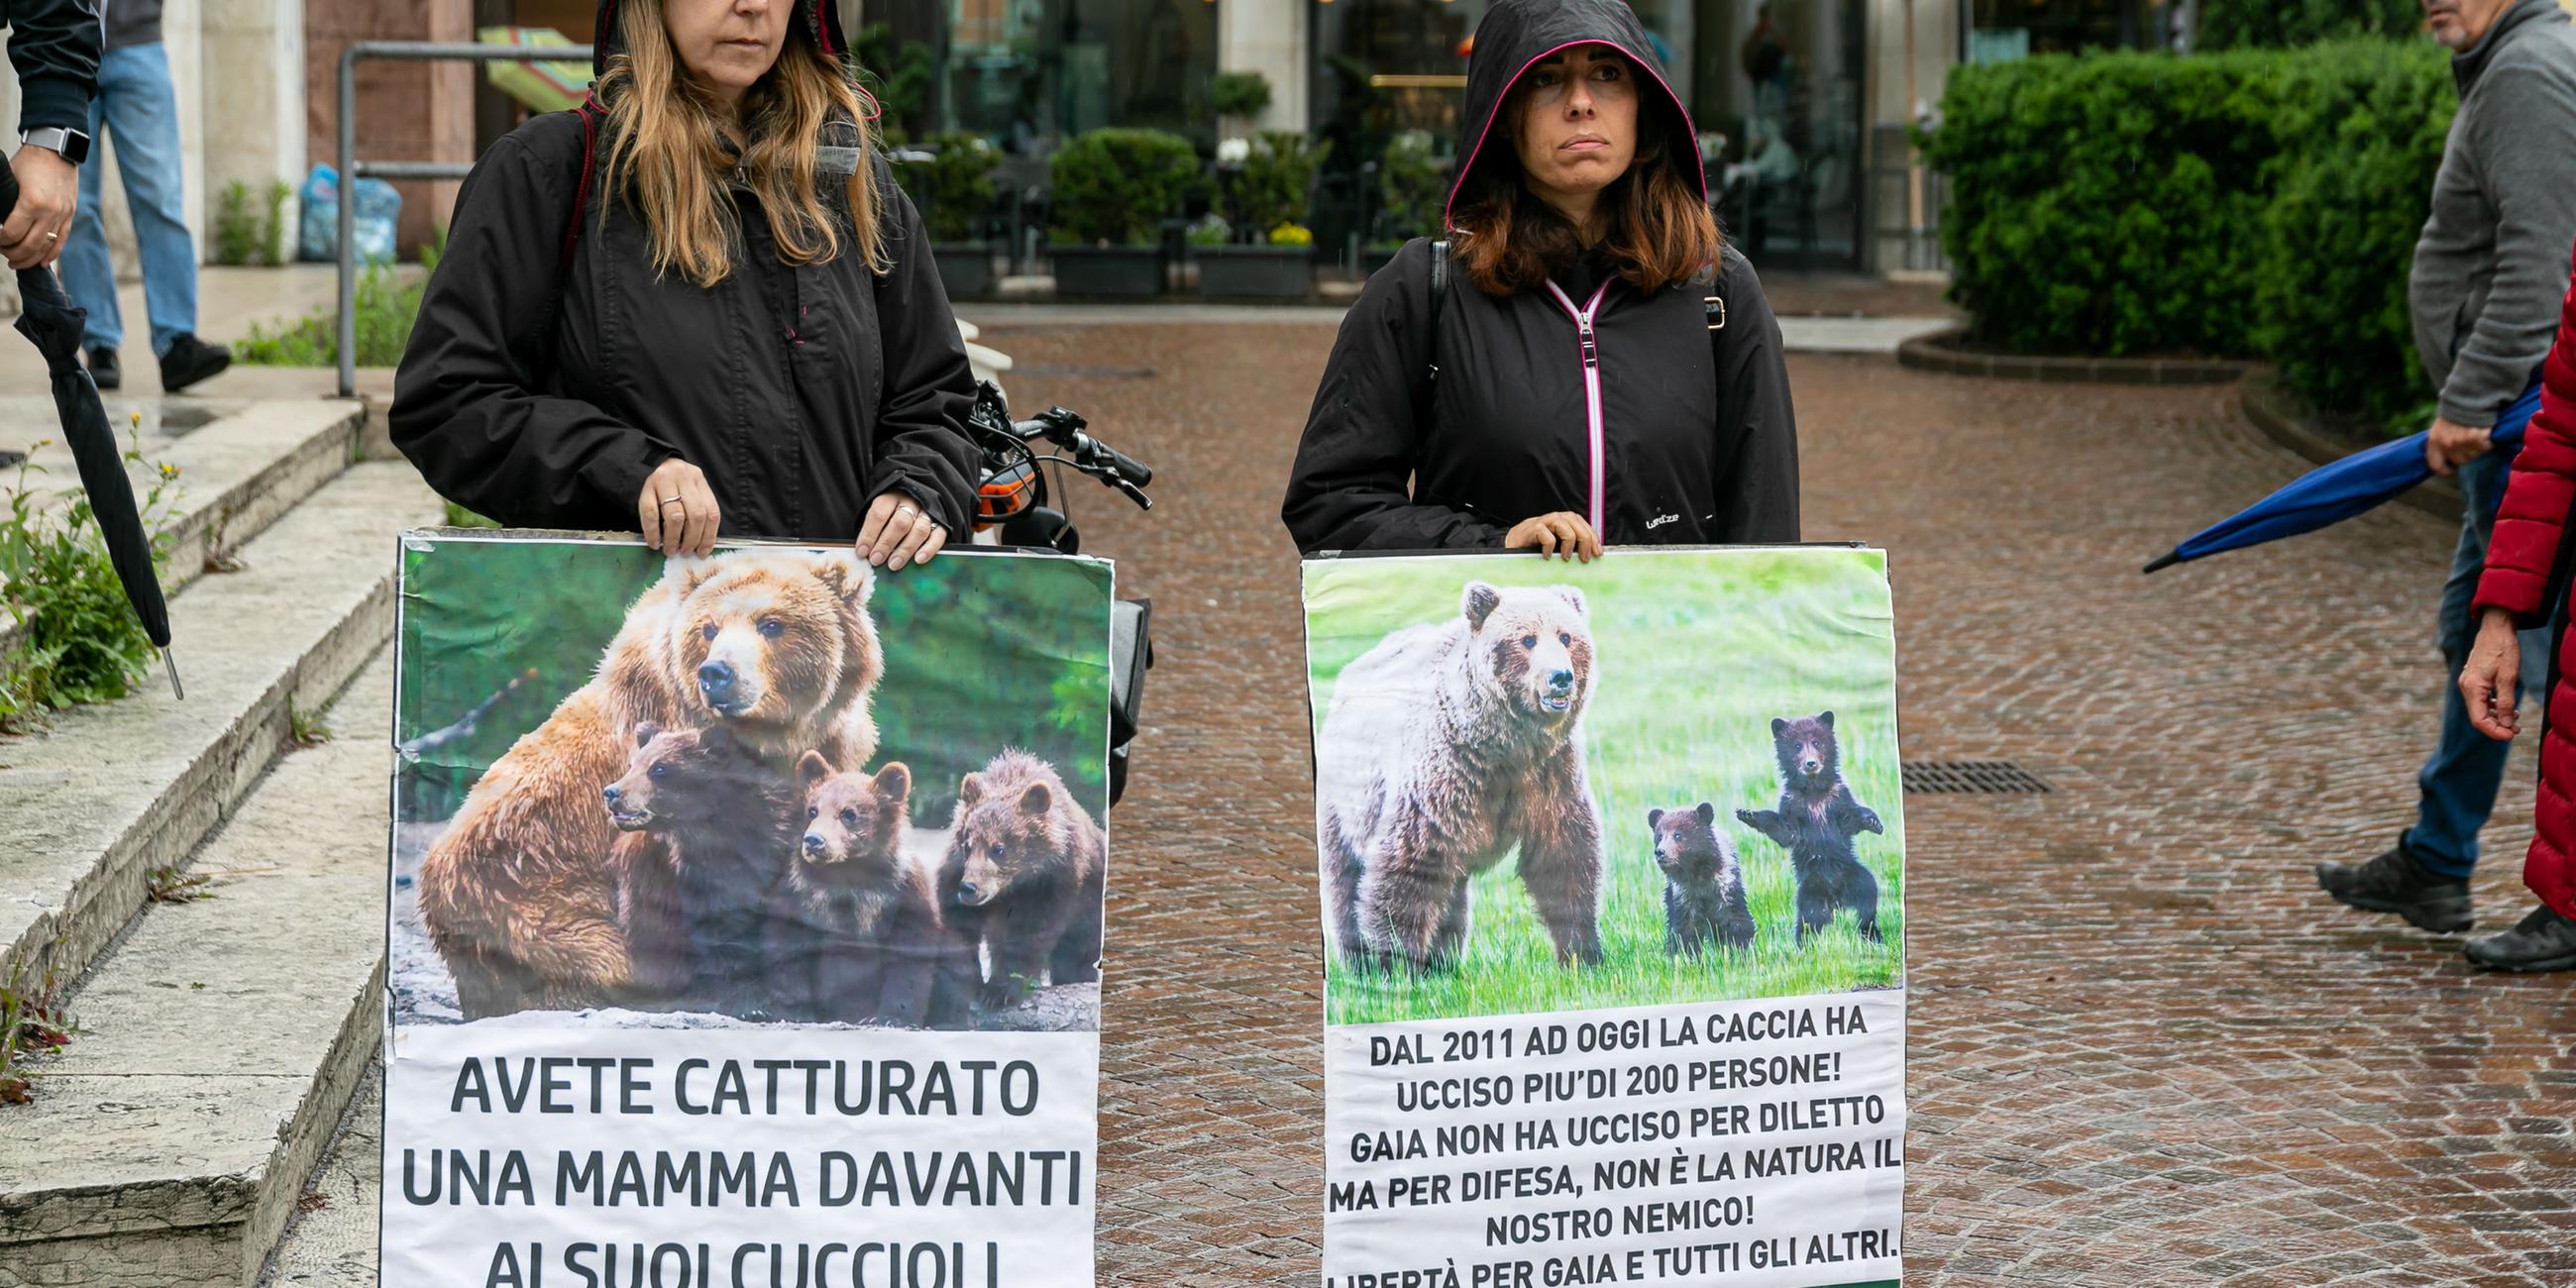 Tierschützer demonstrieren für Bärin JJ4.